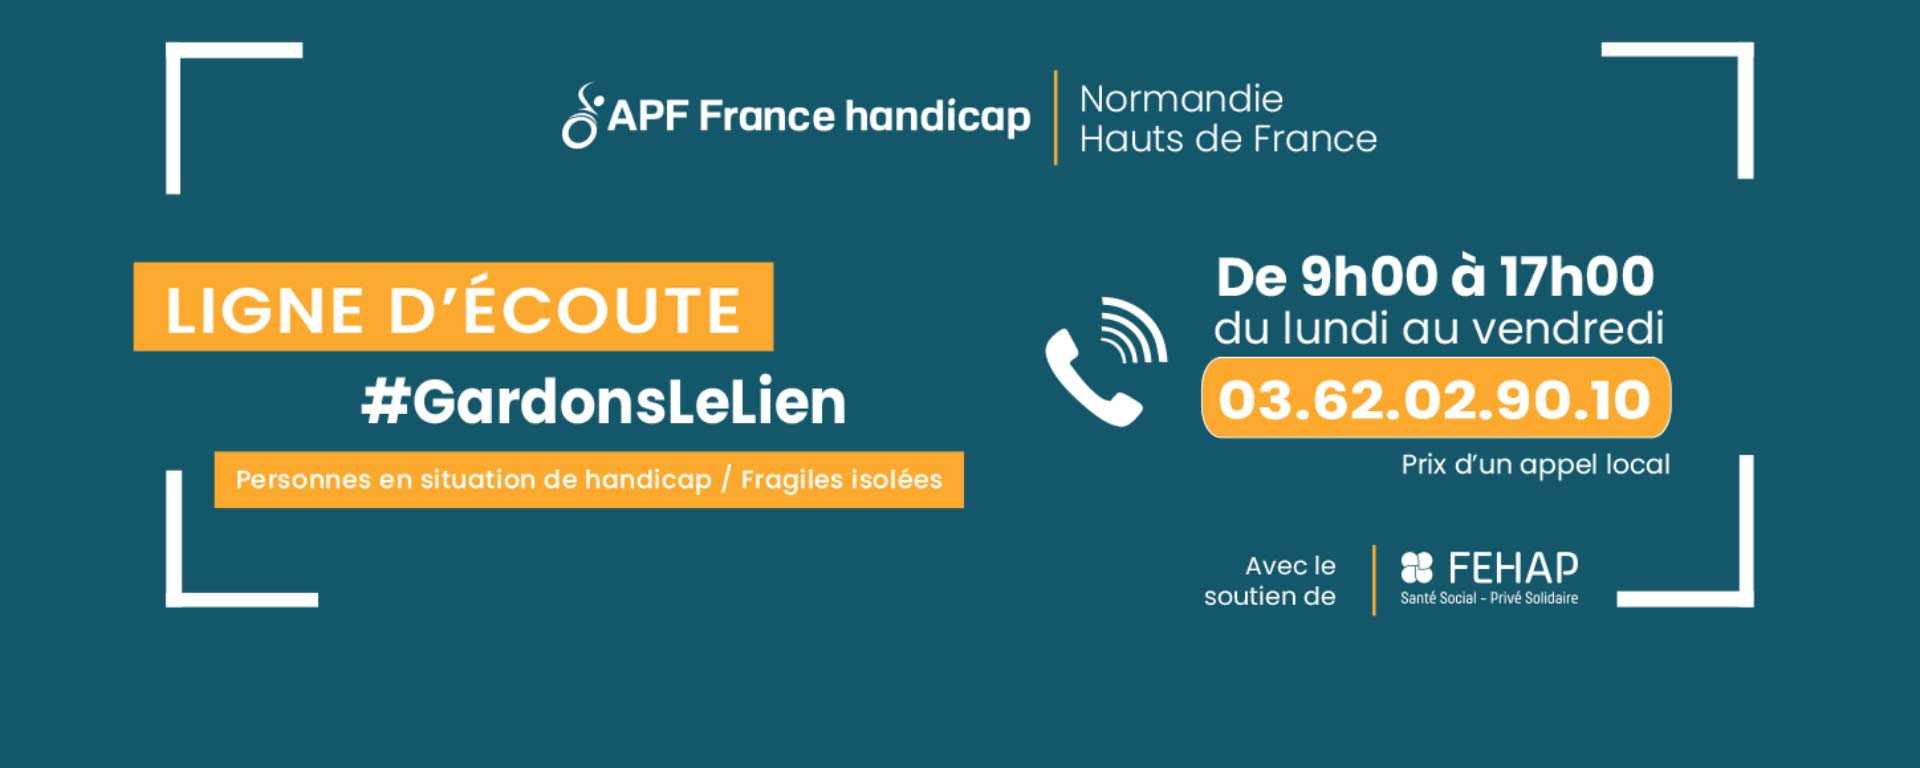 Un numéro de téléphone unique pour les personnes en situation de handicap des Hauts de France et de Normandie !